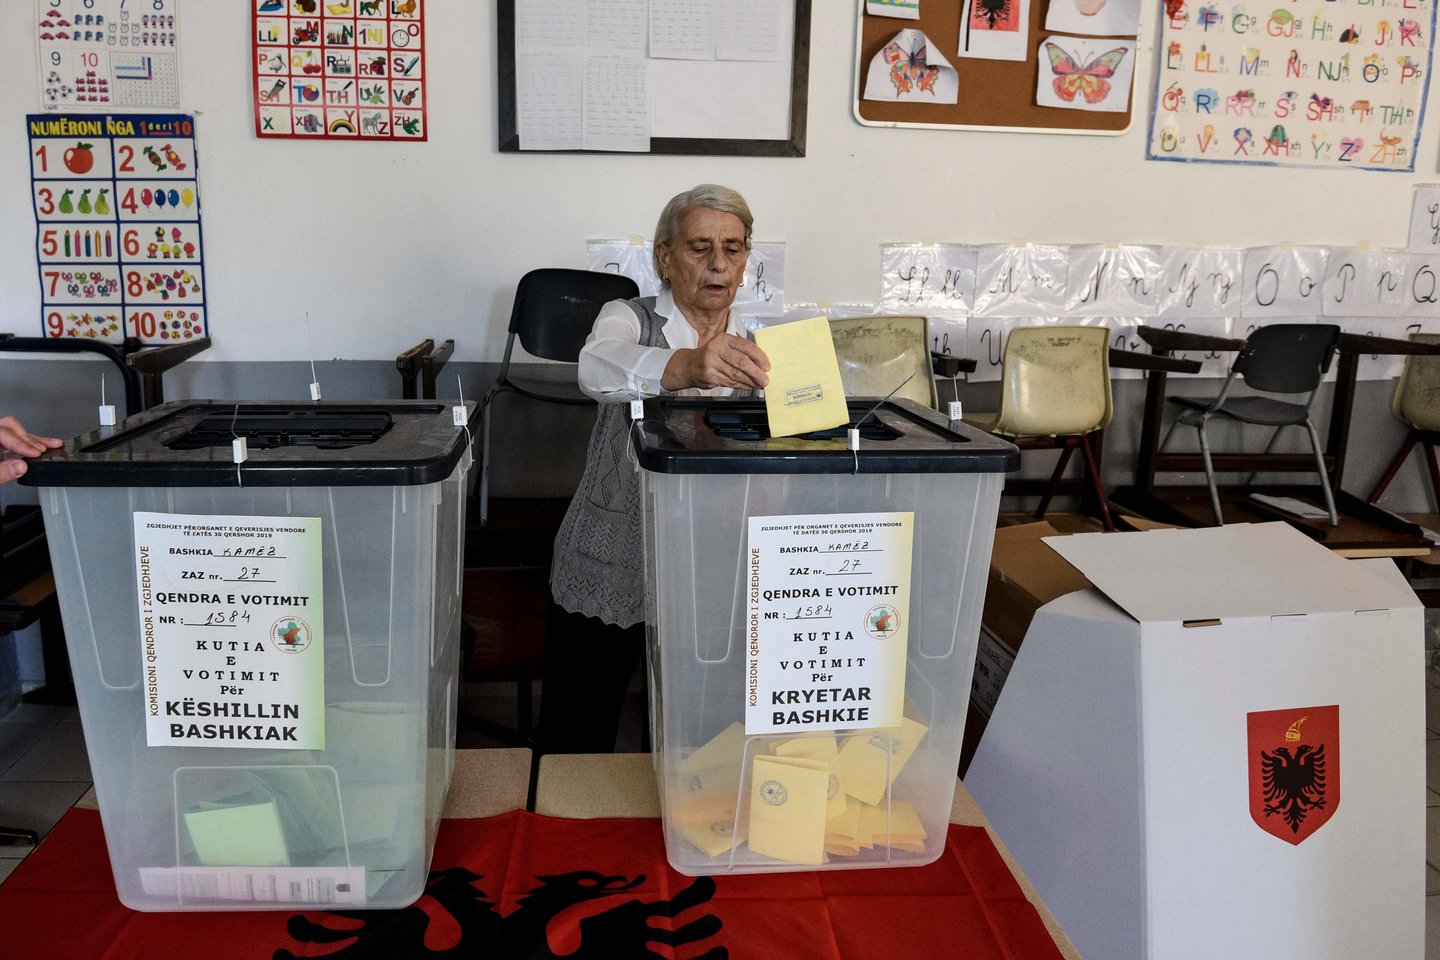  Socialistų vadovaujama vyriausybė siekia, kad rinkimai vyktų, o opozicija nori juos nutraukti. <br> AFP/Scanpix nuotr.